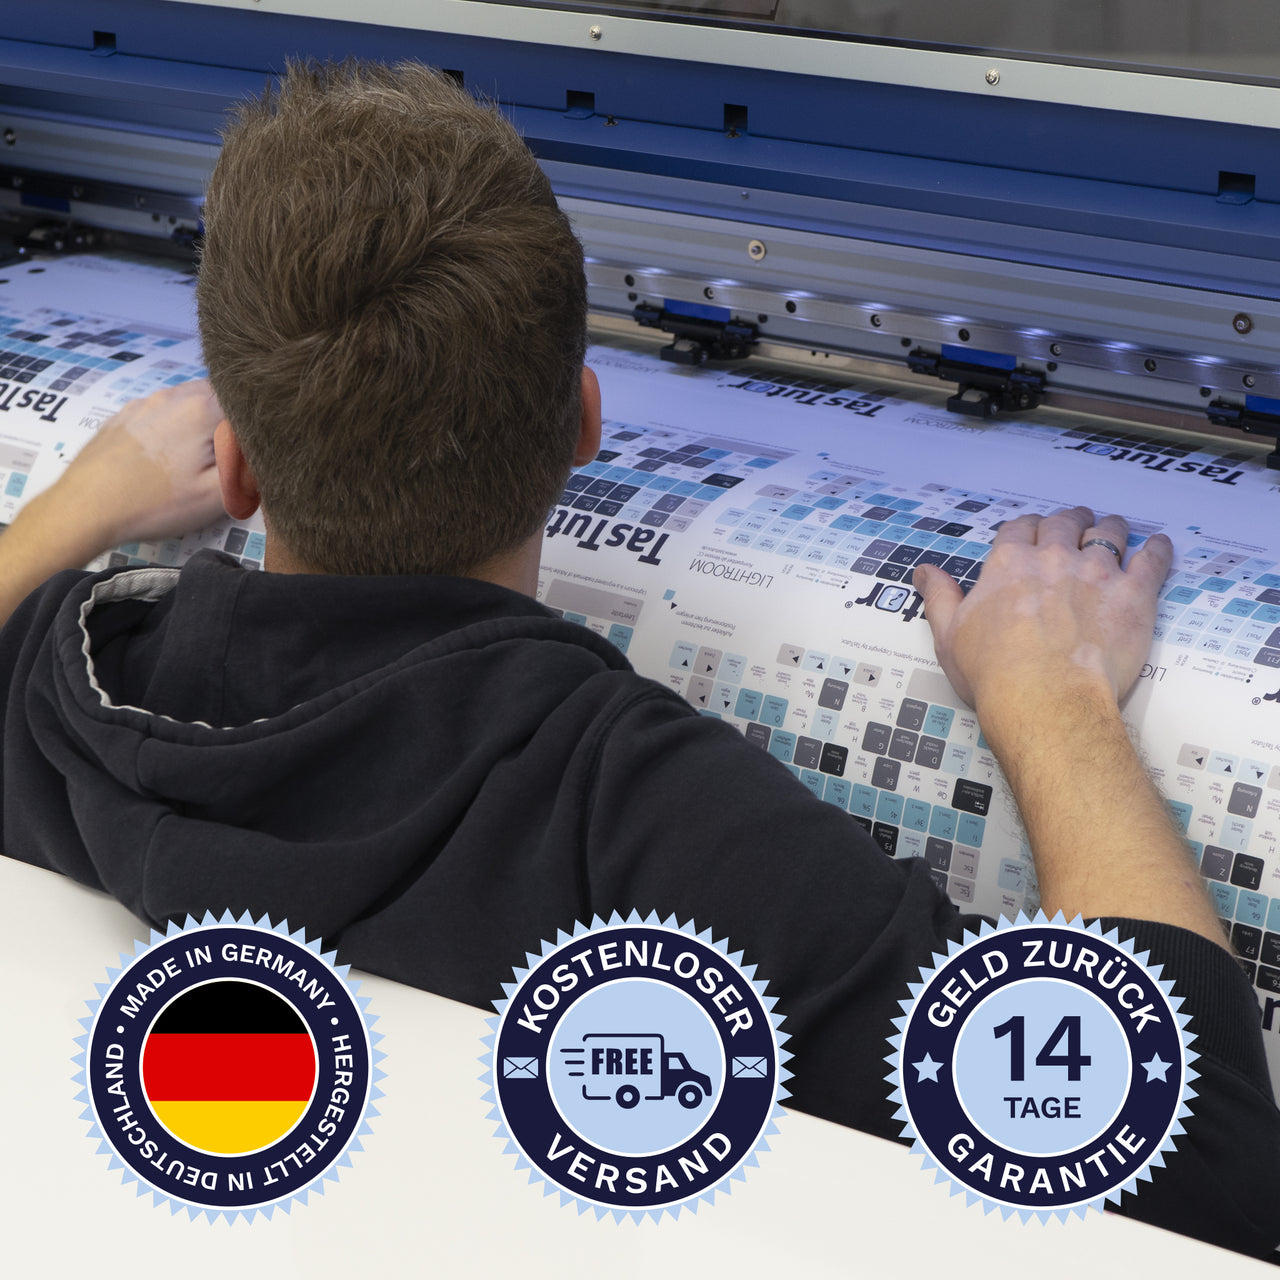 Capture One Tastaturaufkleber werden in Deutschland hergestellt. Der Versand ist kostenlos und wir gewährleisten 14 Tage Geld zurück Garantie | TasTutor